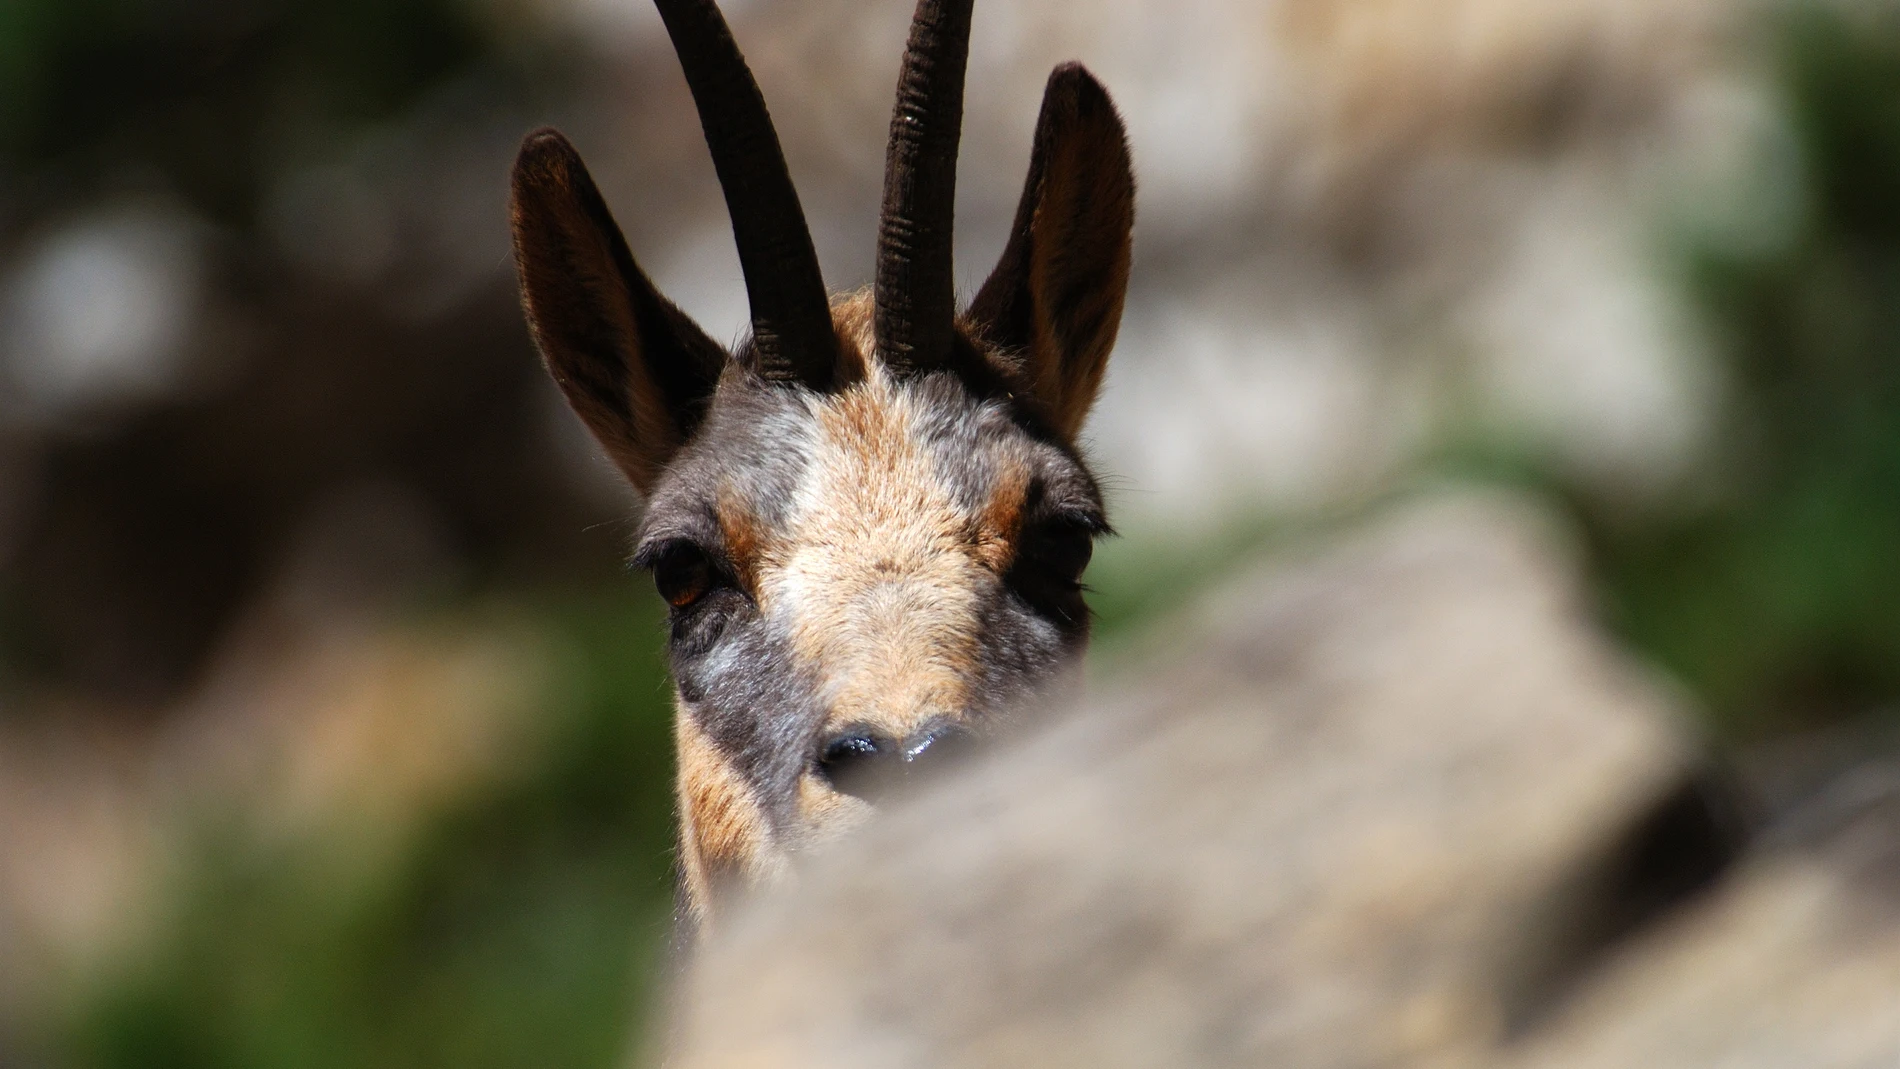 La nueva web Faunapyr recoge toda la información sobre observación de fauna a ambos lados del Pirineo